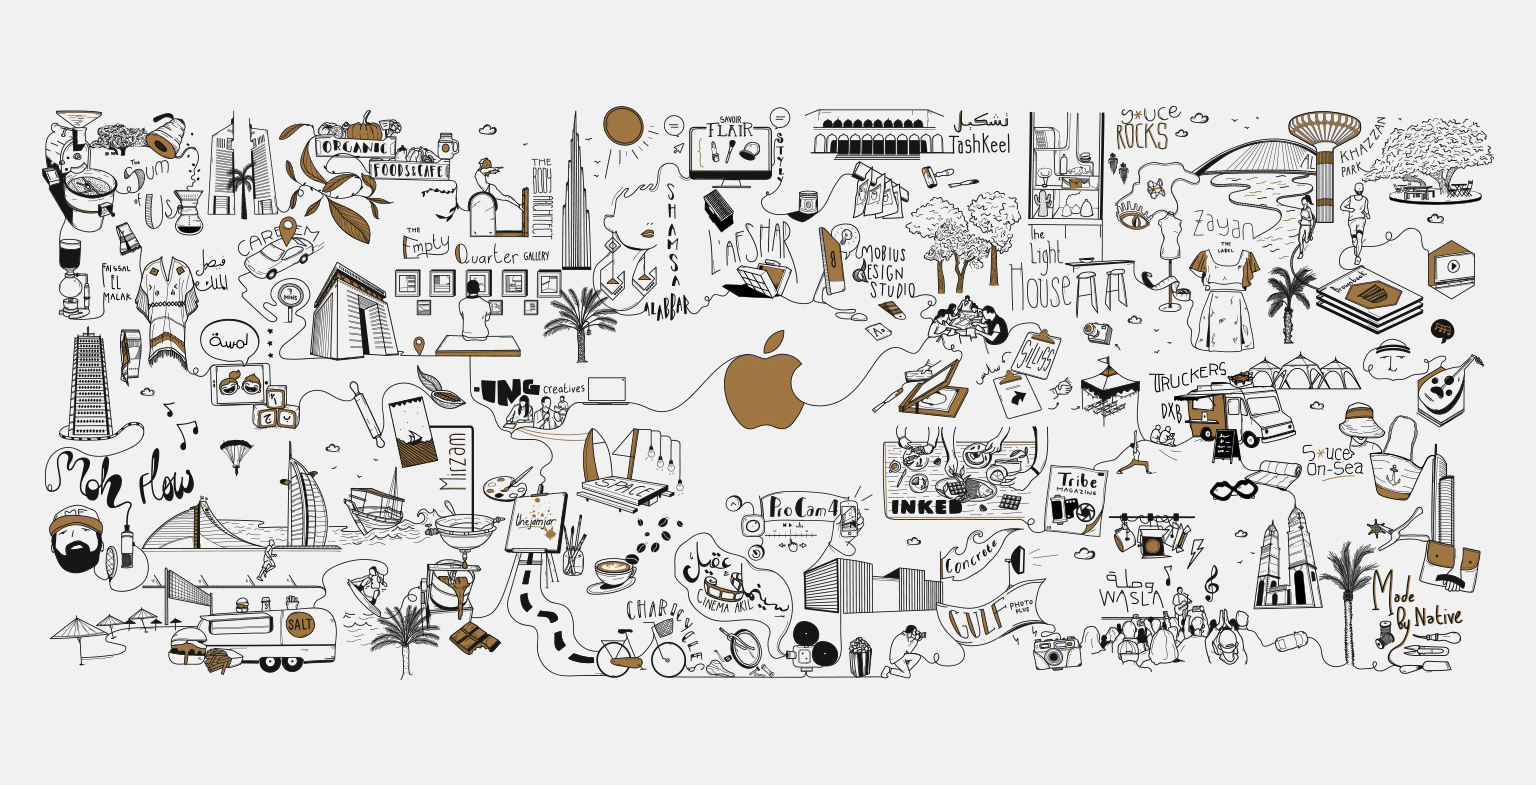 Apple Dubai Mall: "Creativity. Connected."